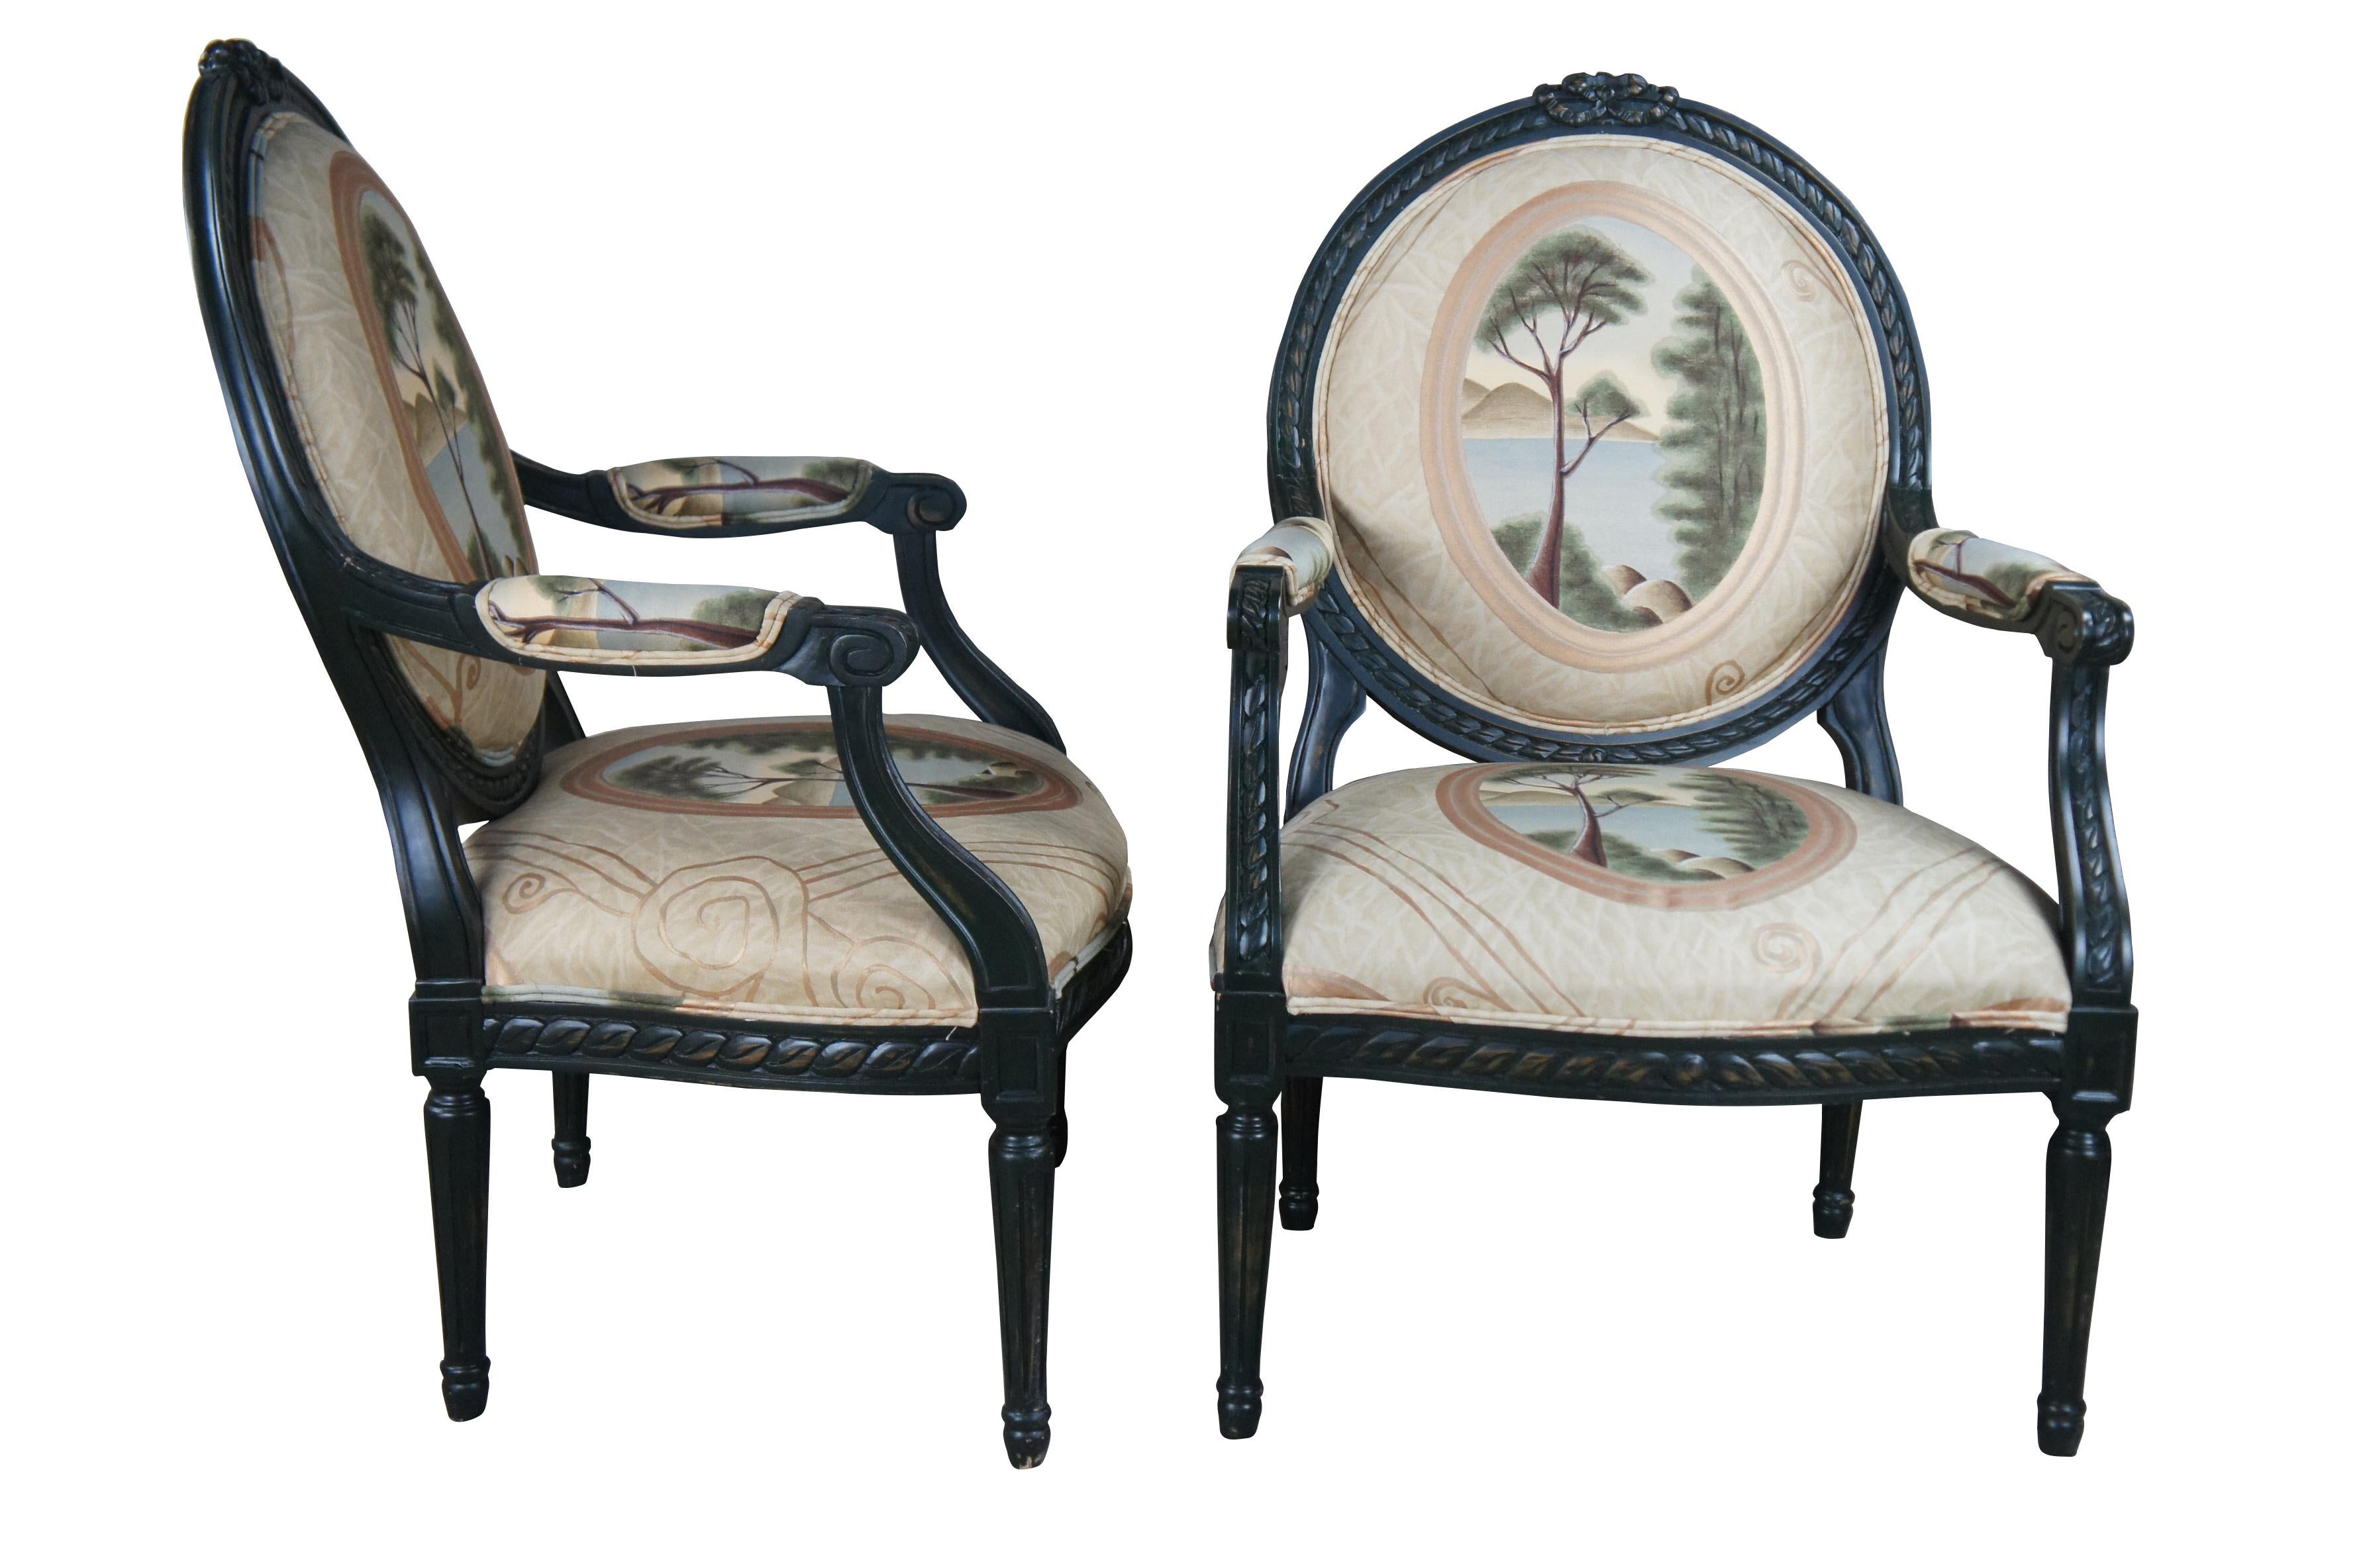 Zwei Vintage Drexel Heritage fauteuil Sessel mit Französisch Louis XVI / Neoklassizismus Styling, das eine ebonisierte Rahmen mit Ballon zurück Band Akzent, szenische Kamee Ozean Landschaft / Seestück Polsterung und kannelierte konischen Beinen